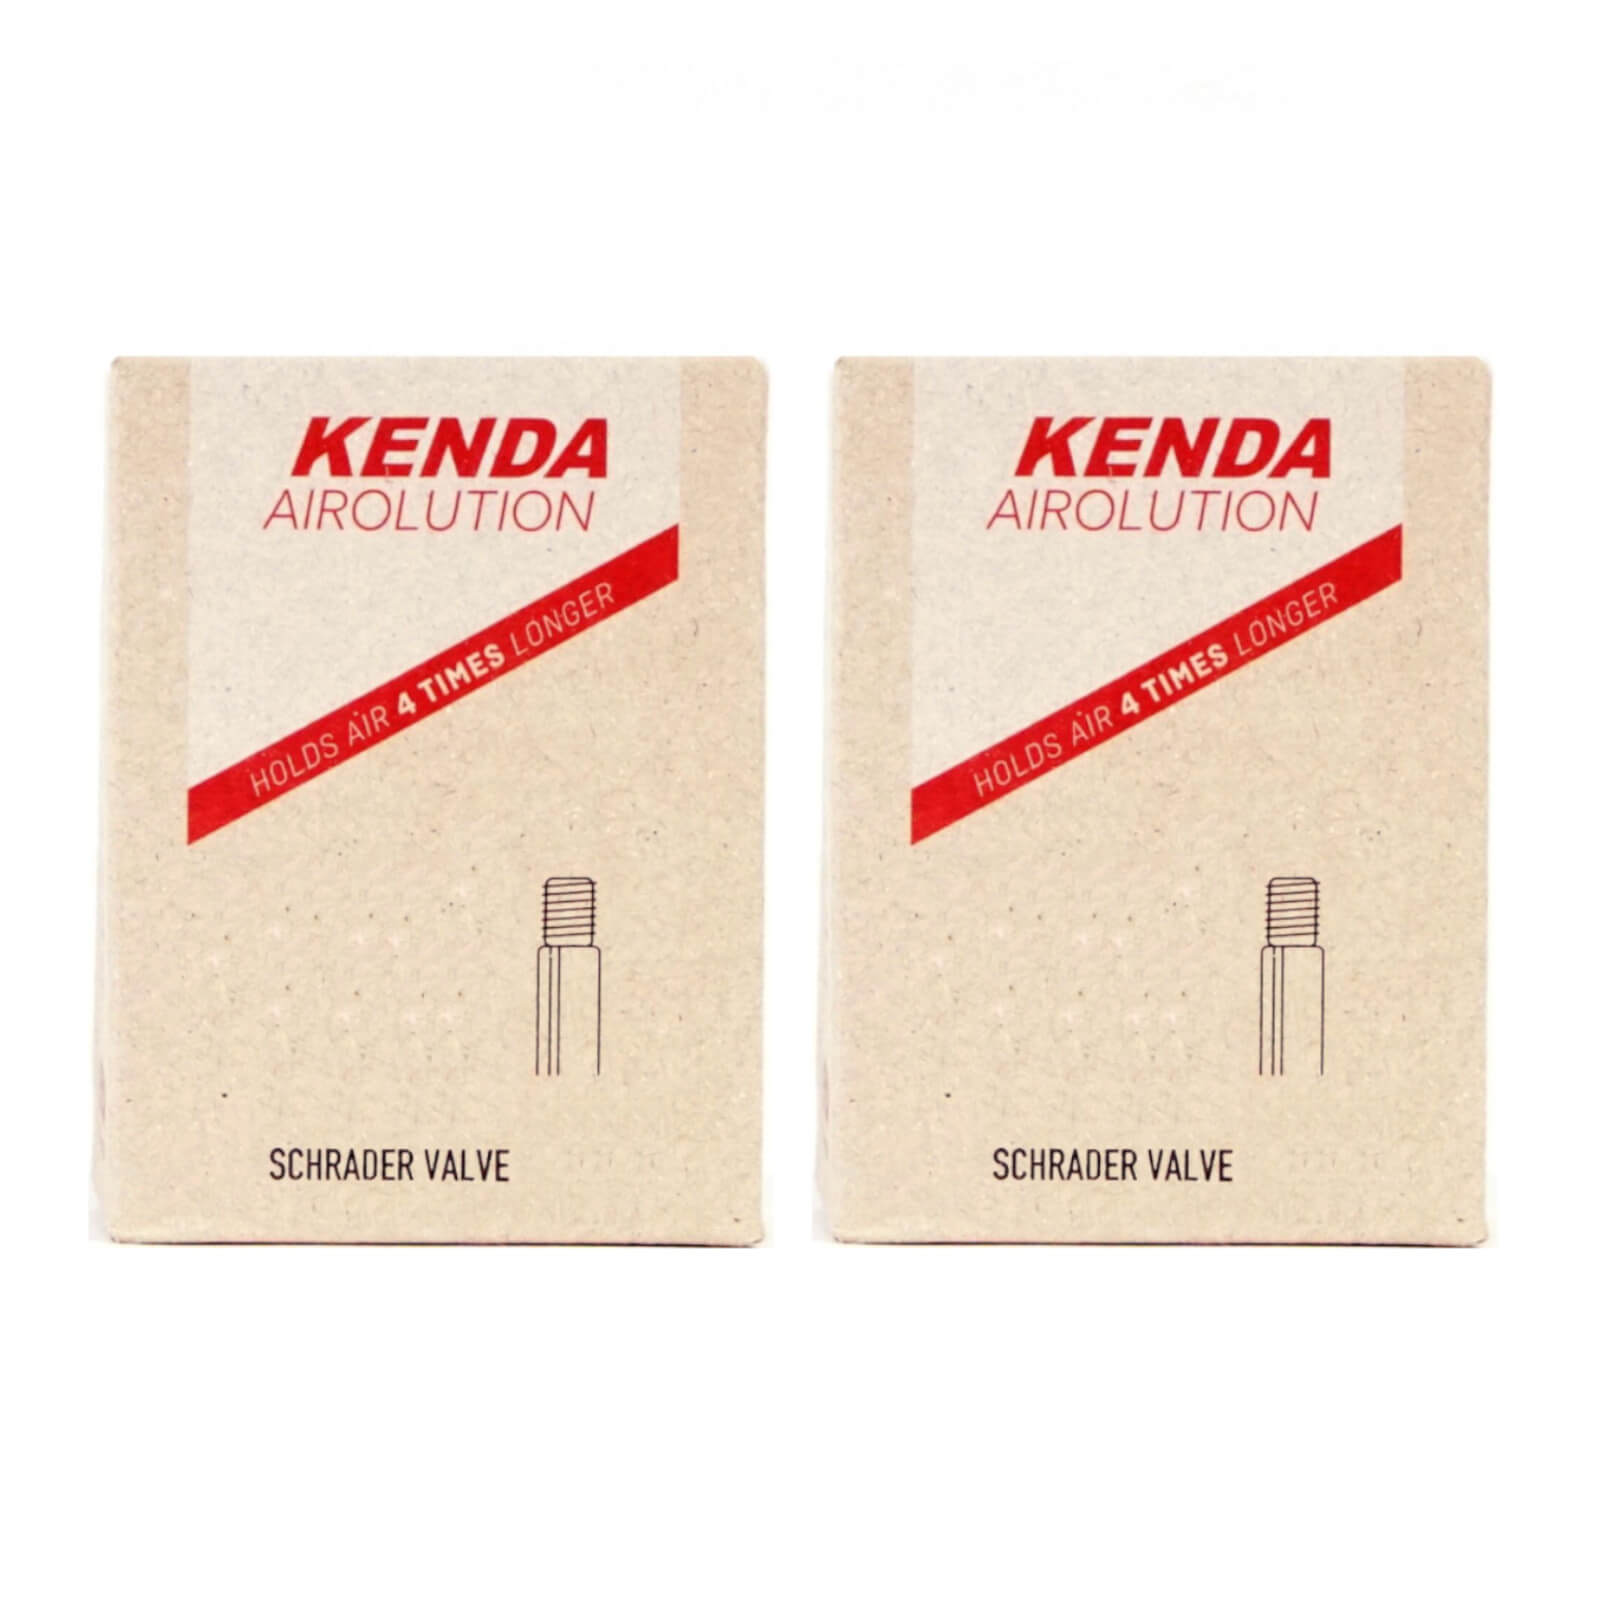 Kenda Airolution 16x1.5-2.25" 16 Inch Schrader Valve Bike Inner Tube Pack of 2